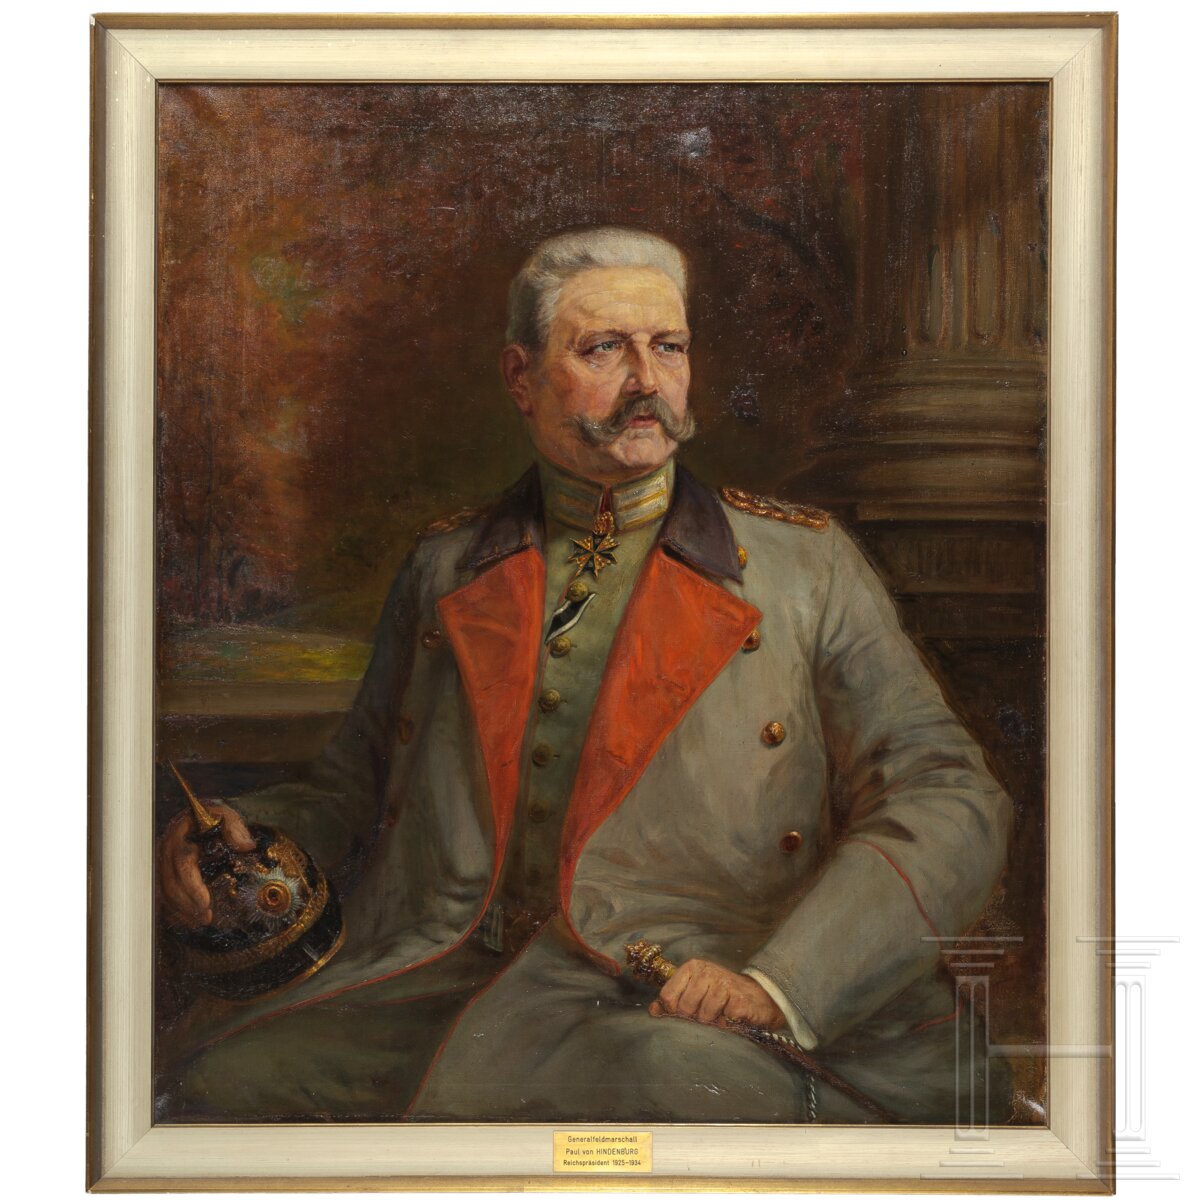 GFM Paul von Hindenburg (1847 - 1934) - großes Portraitgemälde in Uniform, 1918